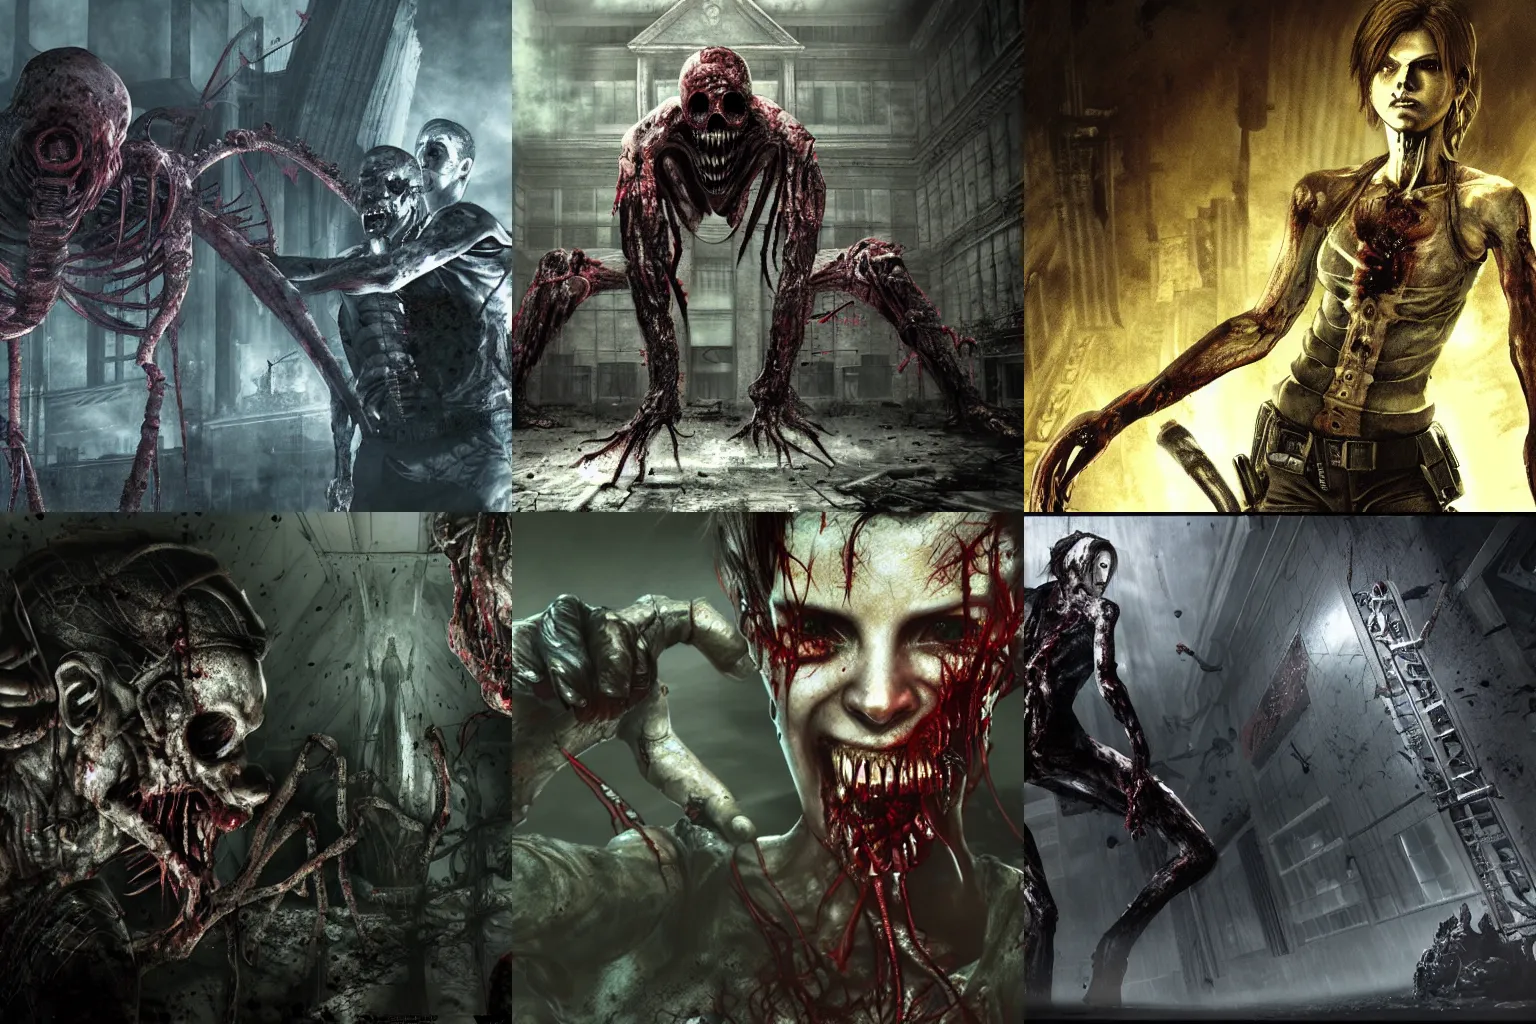 Image similar to Resident Evil virus concept art, highly detailed, horror, scary, terrifying, horrific, hd 4k